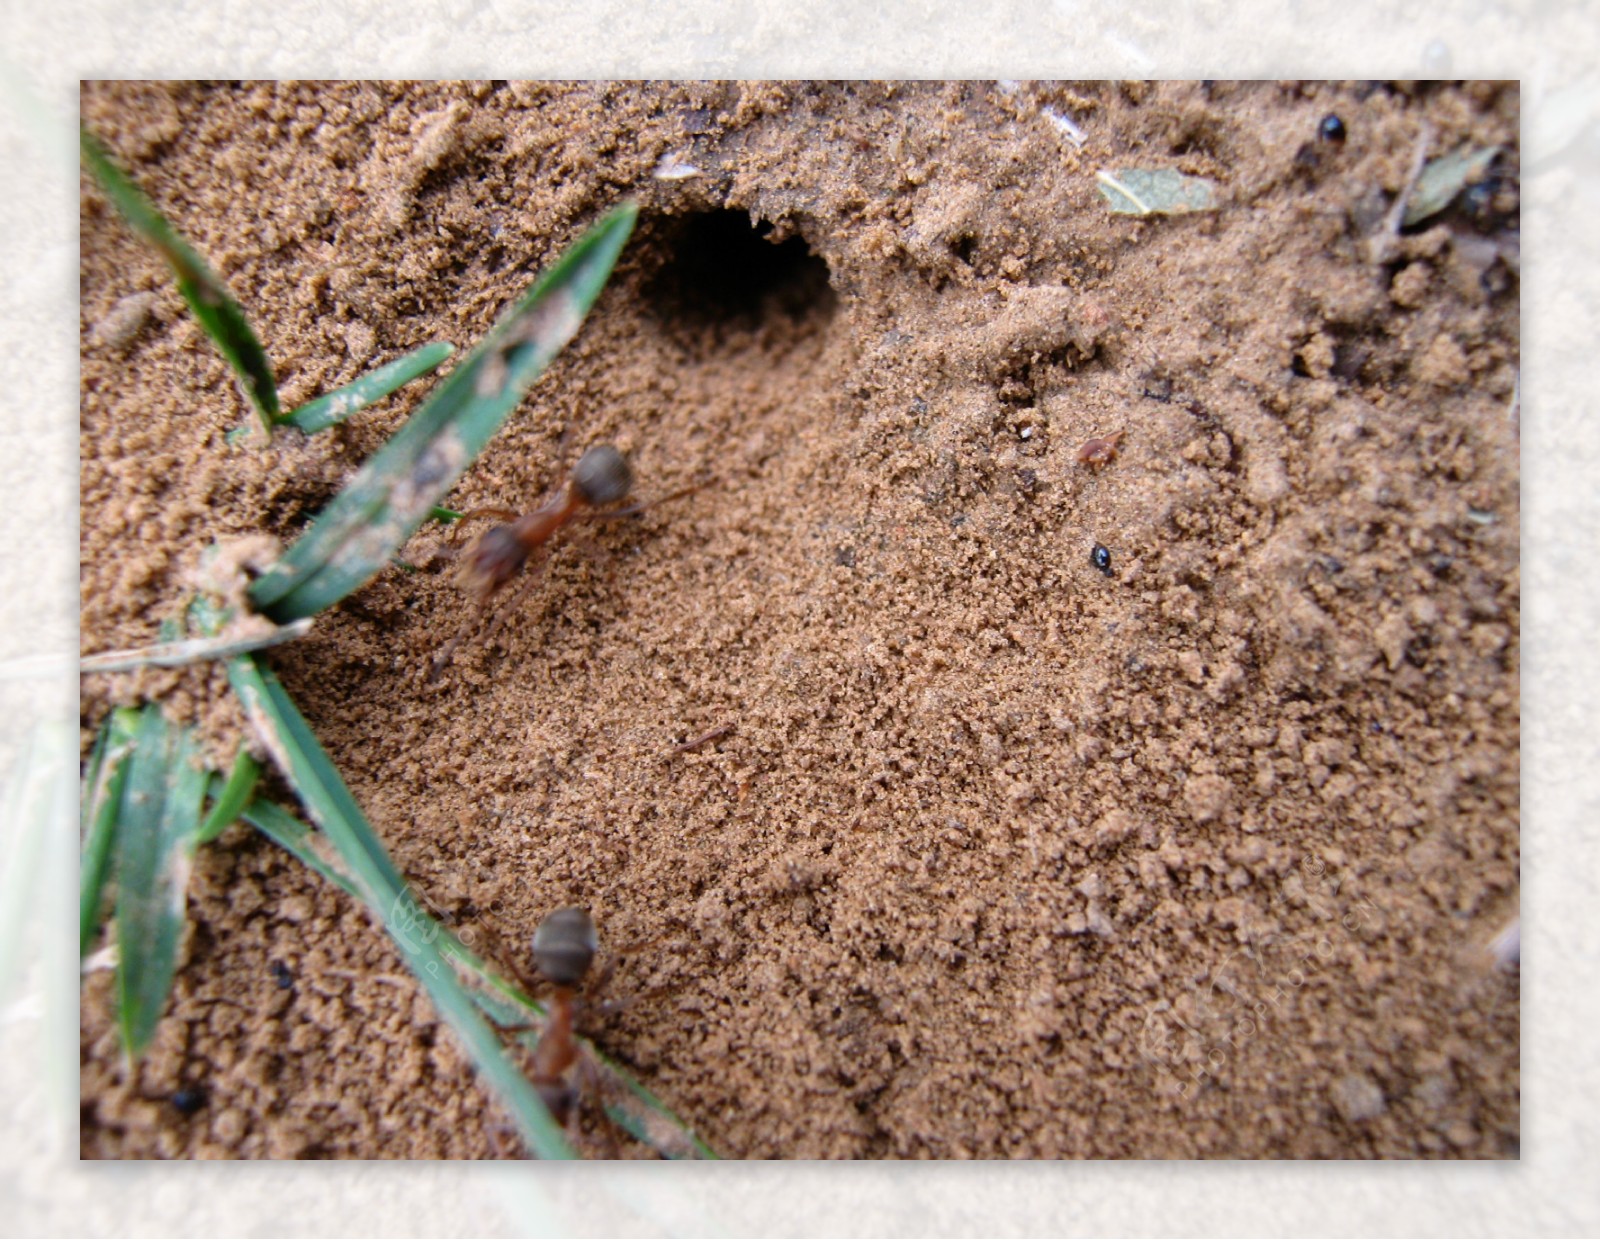 蚂蚁洞图片